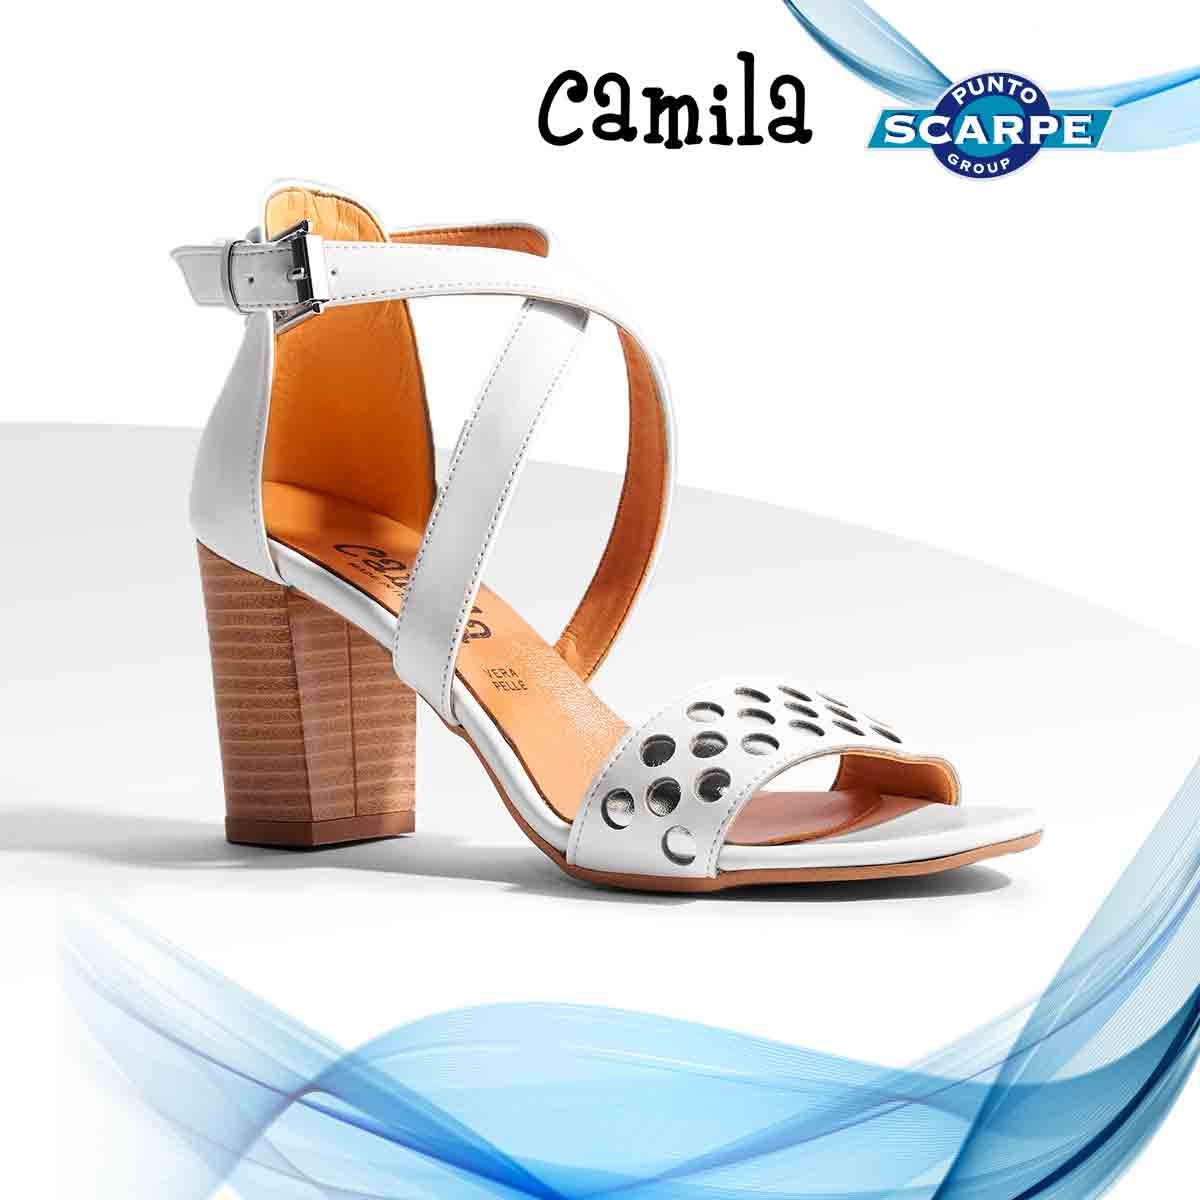 Zapatillas camila's burdeos Donna Scarpe Scarpe sportive Scarpe da ginnastica Camila's Scarpe da ginnastica 